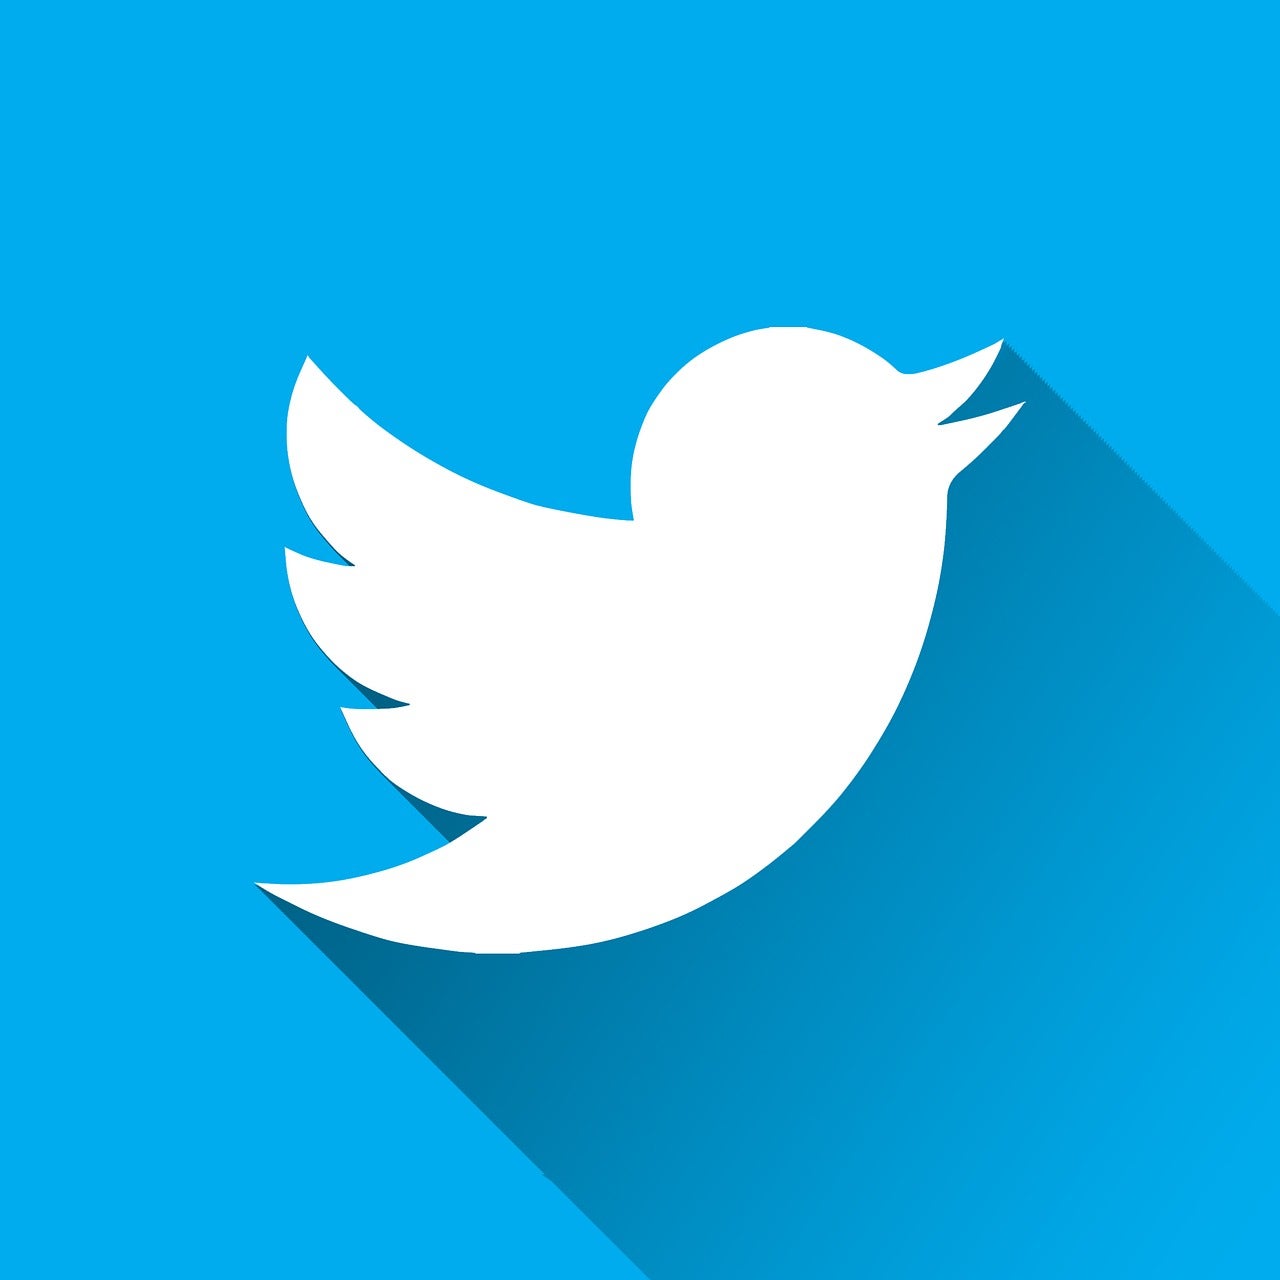 推特粉丝账号购买: 增加社交媒体影响力的有效策略